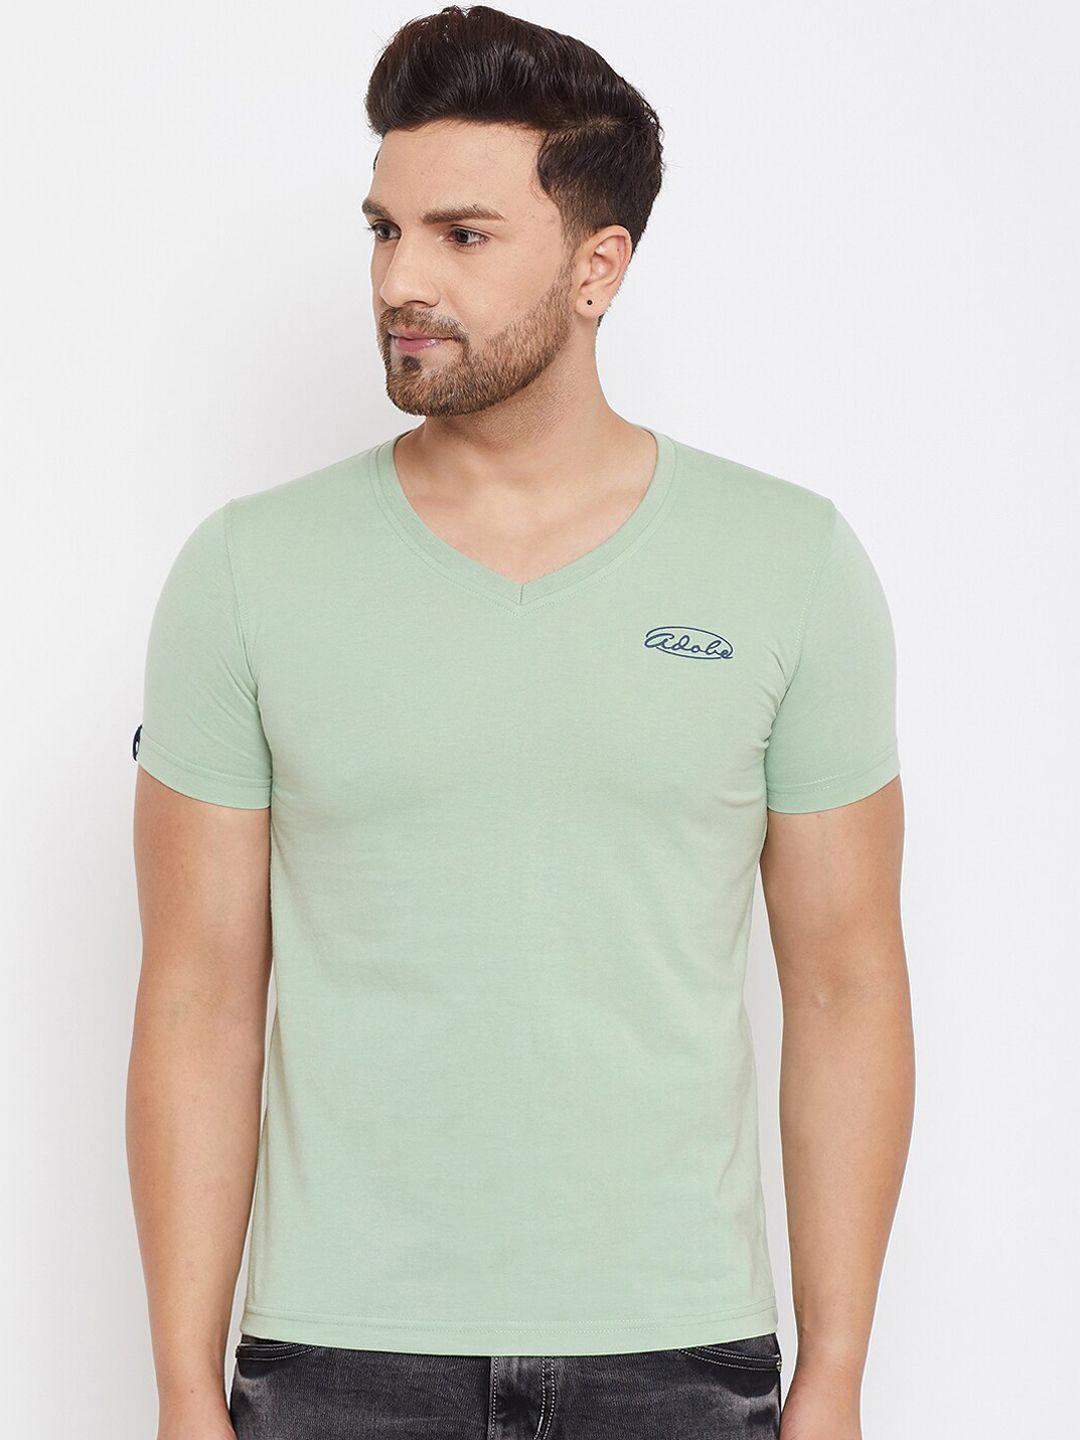 adobe-men-sea-green-solid-v-neck-t-shirt